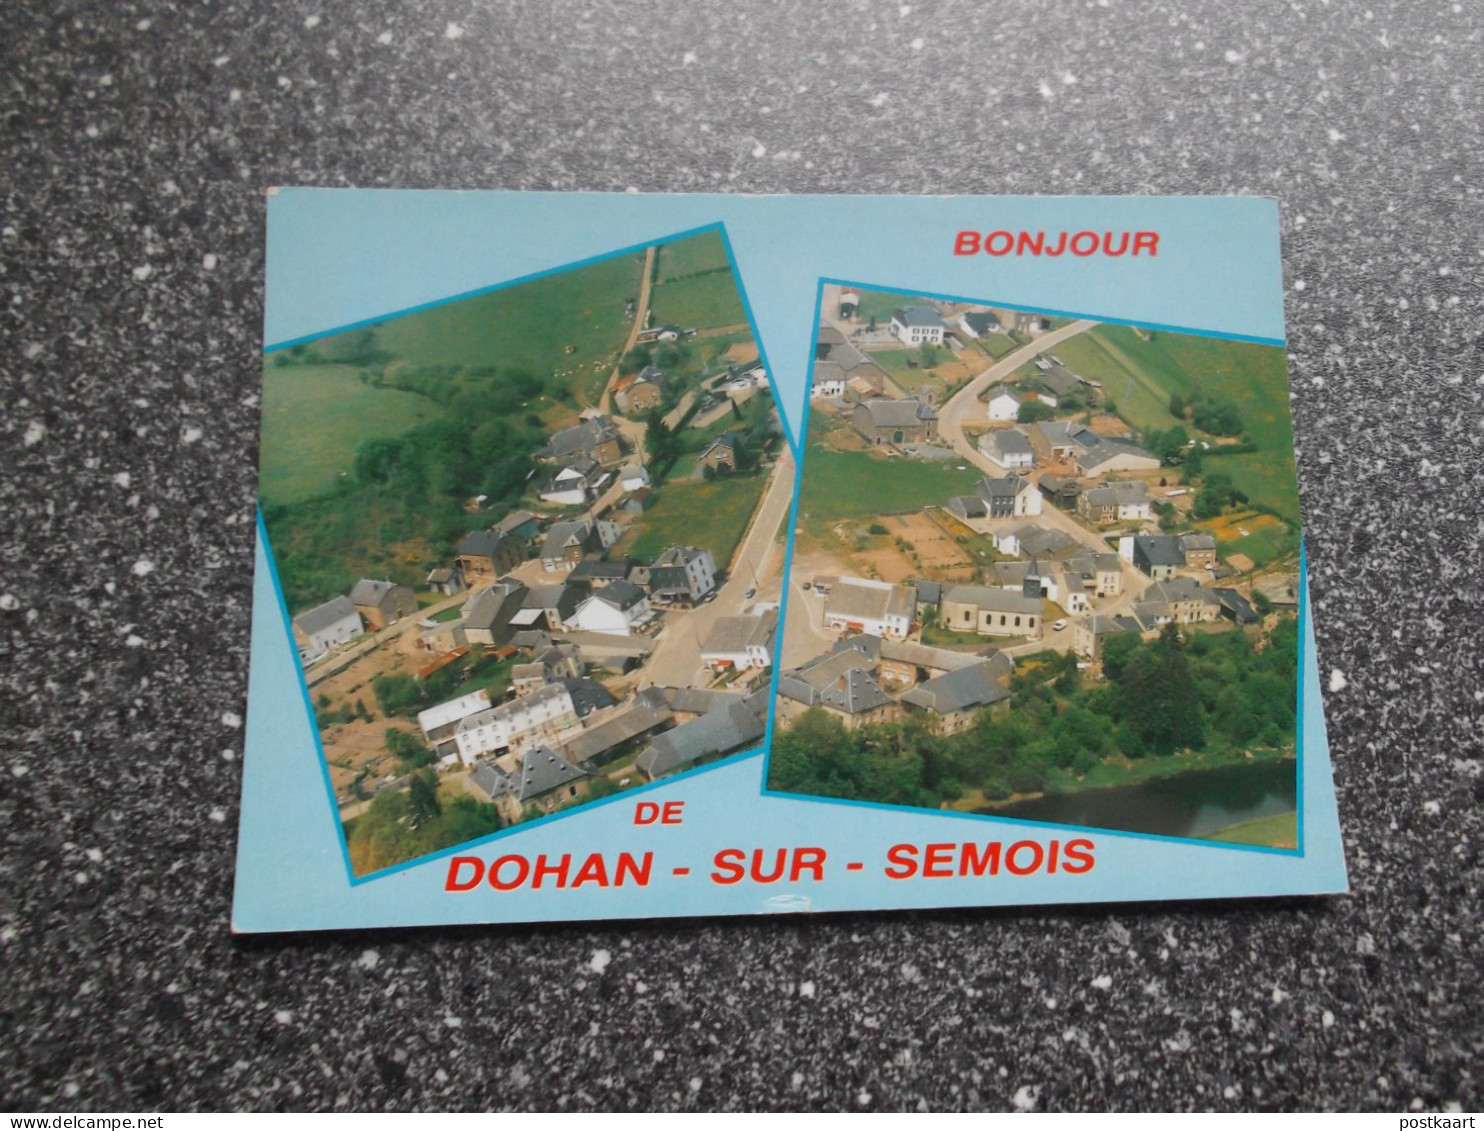 DOHAN S/Semois: Bonjour - Souvenir - Bouillon